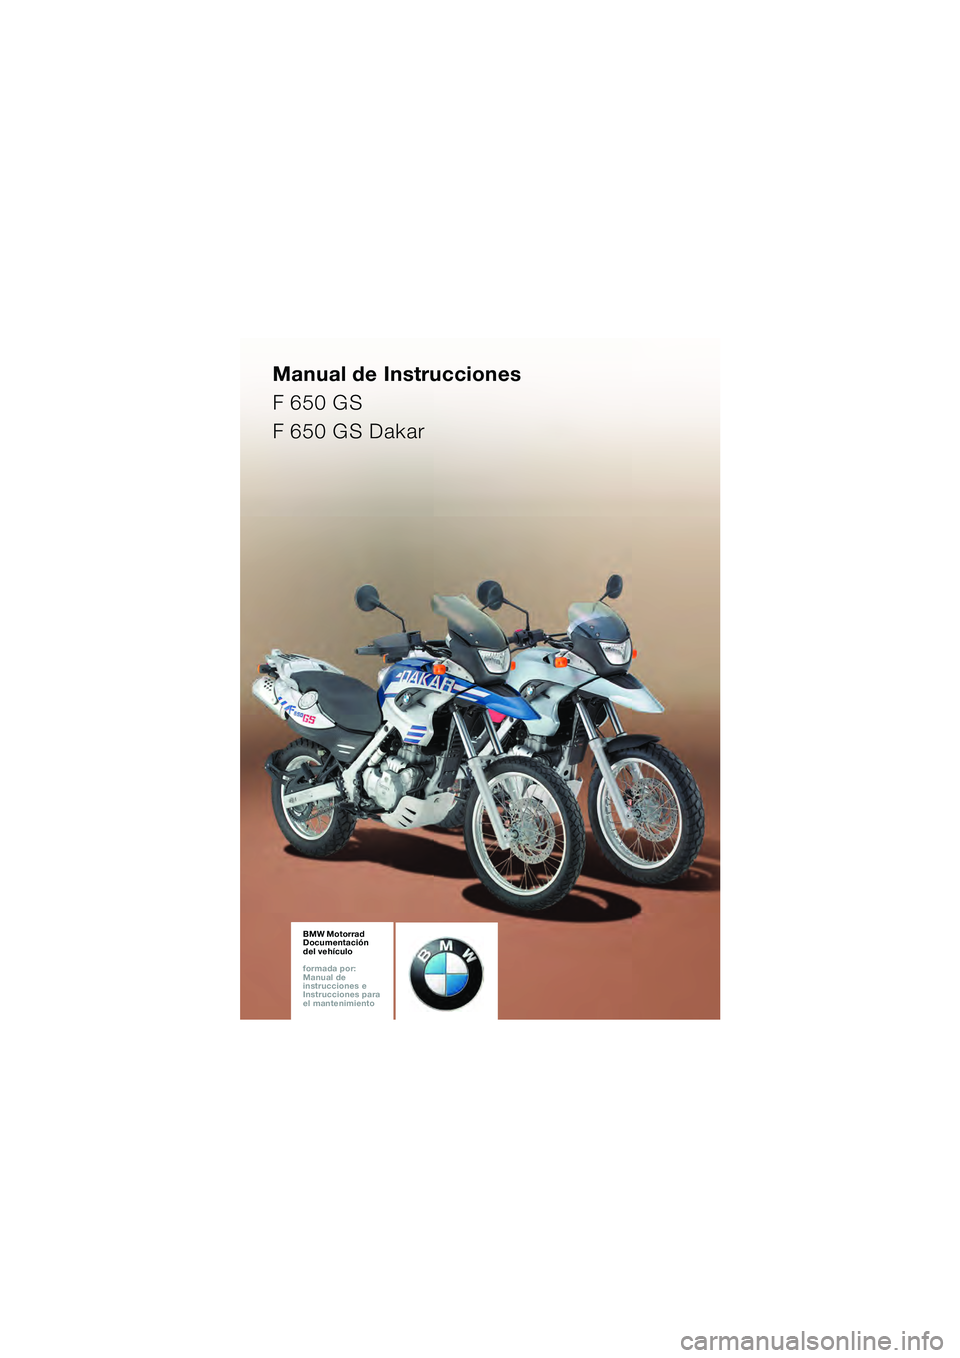 BMW MOTORRAD F 650 GS DAKAR 2003  Manual de instrucciones (in Spanish) Manual de Instrucciones
F 650 GS
F 650 GS Dakar
BMW Motorrad
Documentación  
del vehículo
formada por:  
Manual de  
instrucciones e  
Instrucciones para  
el mantenimientoBMW Motorrad
Documentació